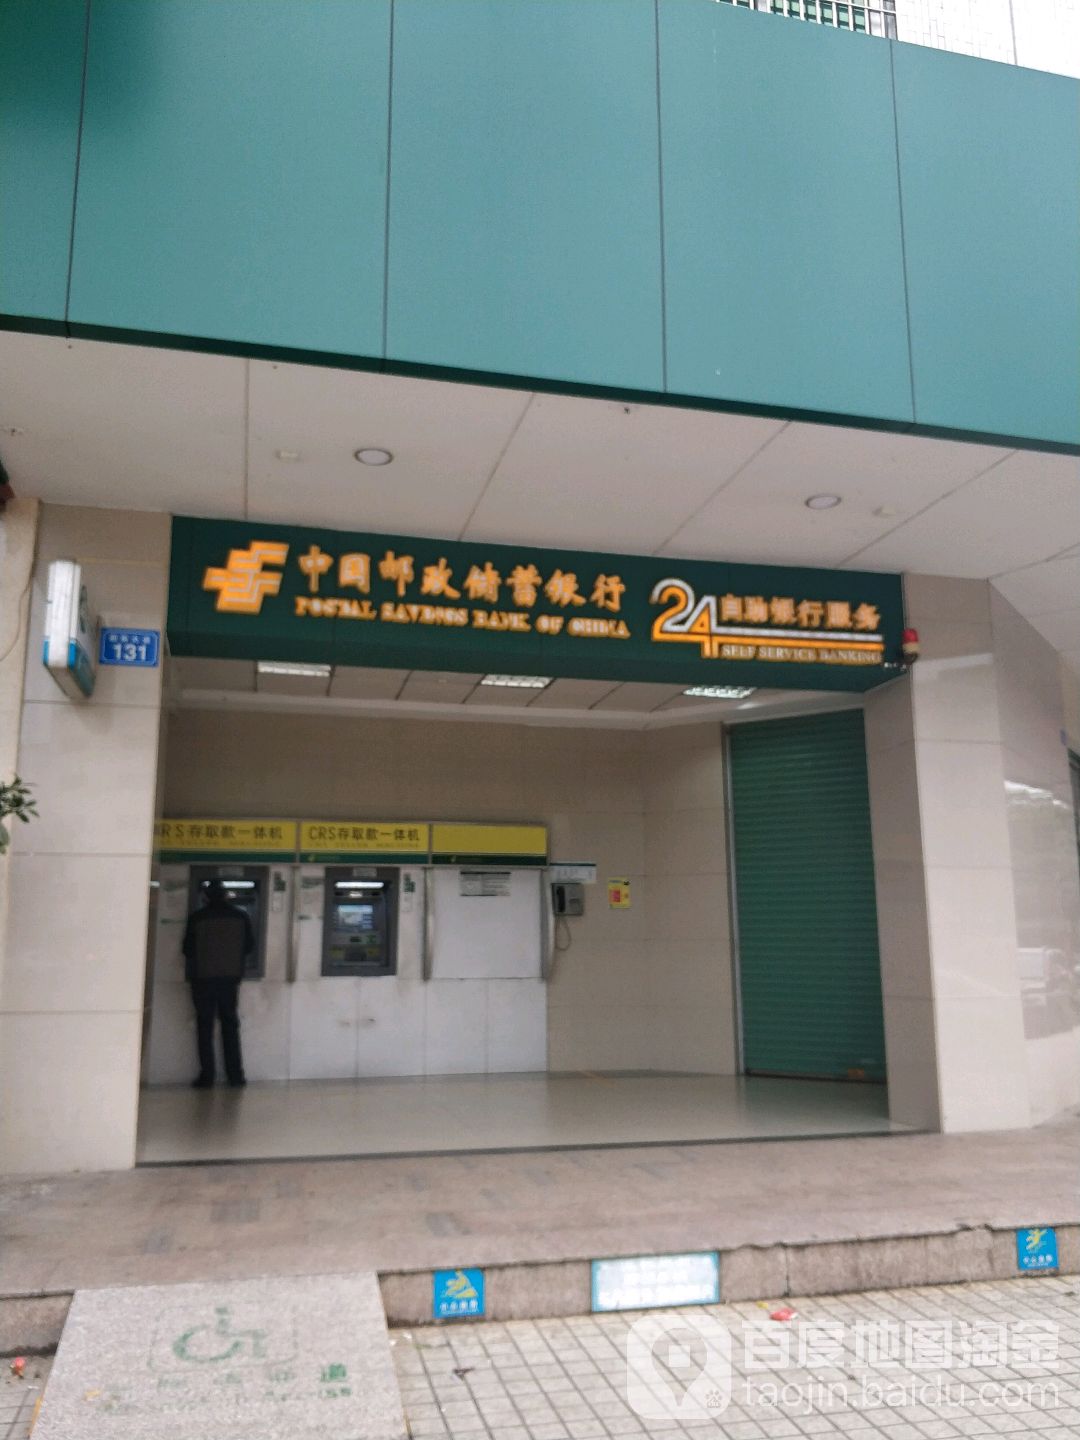 中國郵政儲蓄銀行24小時自助銀行(興寧市支行)